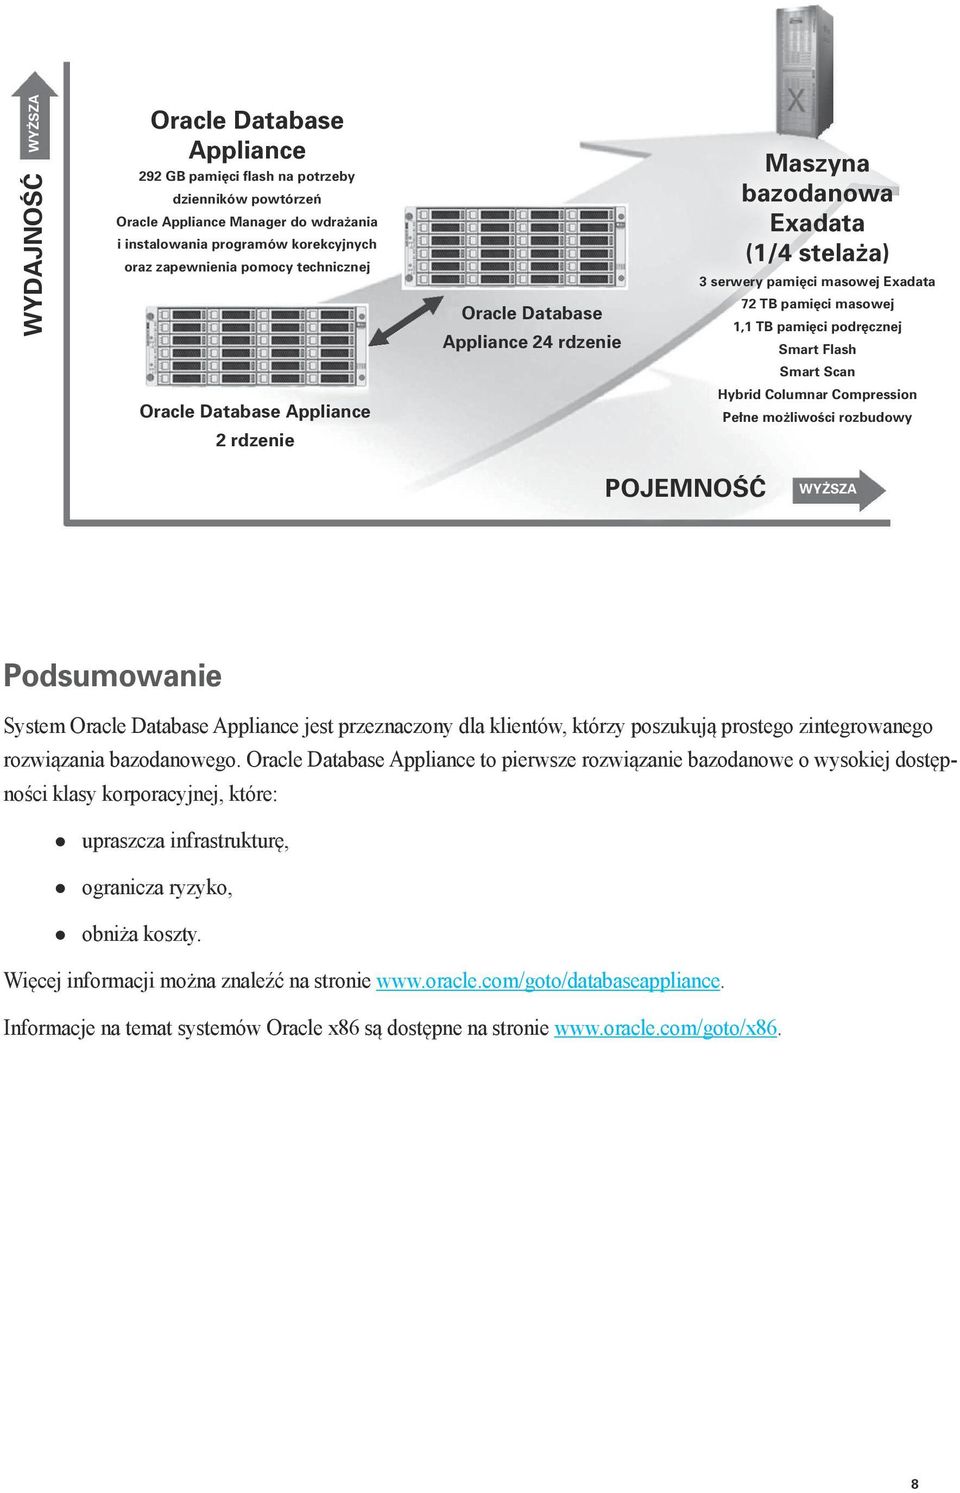 Oracle Database Appliance 2 rdzenie Hybrid Columnar Compression Pełne możliwości rozbudowy POJEMNOŚĆ WYŻSZA Podsumowanie System Oracle Database Appliance jest przeznaczony dla klientów, którzy